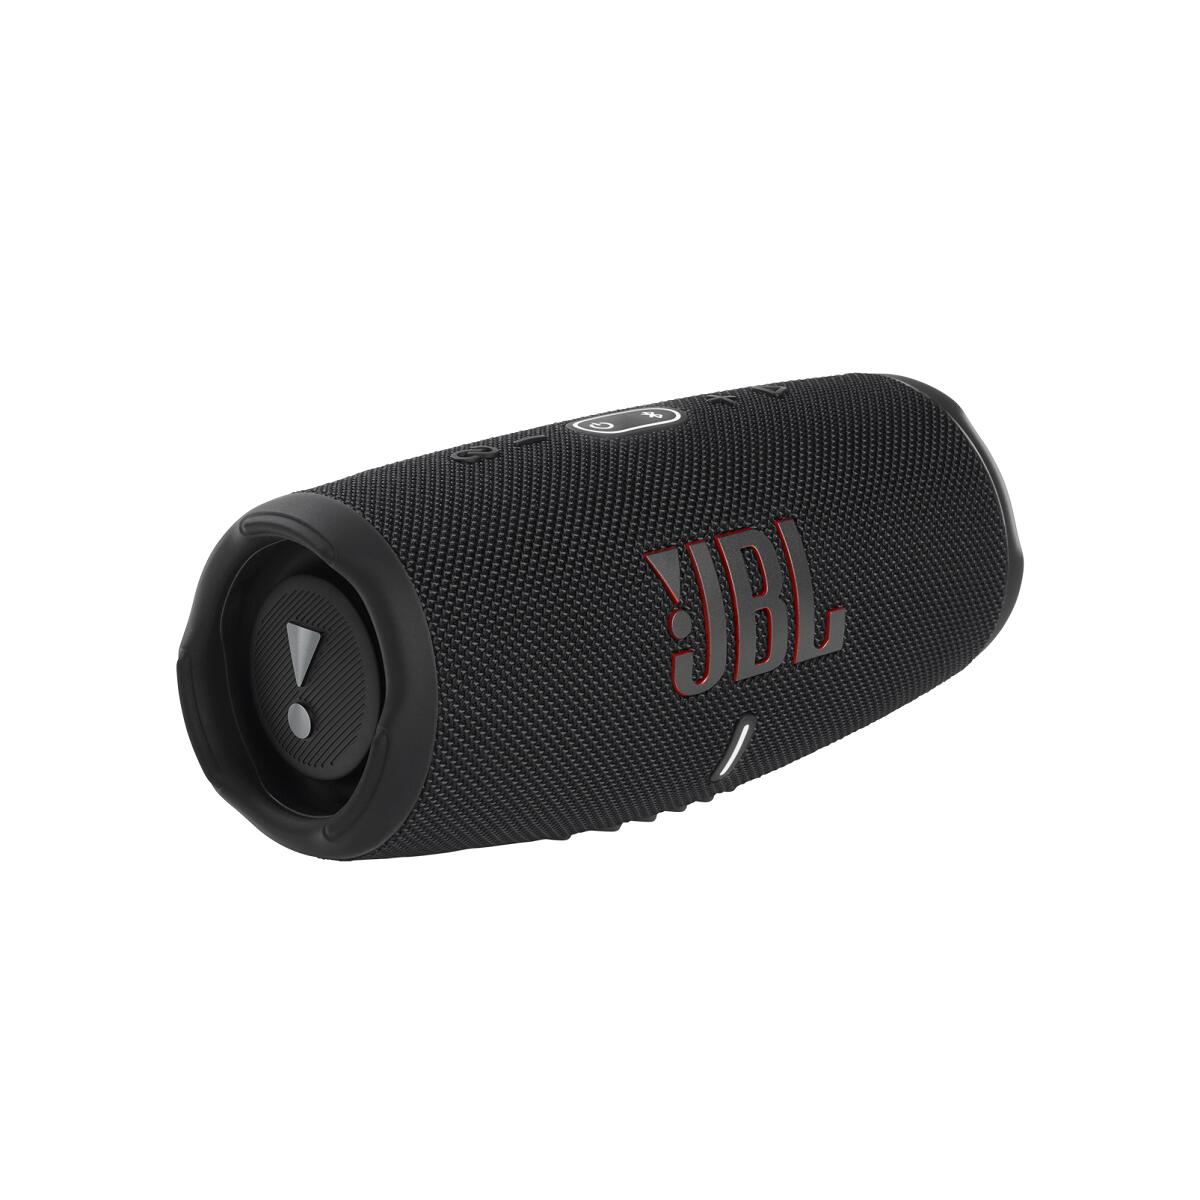 【在庫限り】【新品】 JBL CHARGE 5 ポータブルスピーカー IP67防水・防塵対応 Bluetooth ワイヤレス  JBLCHARGE5BLK ブラック 【送料無料】 | アッキーインターナショナル